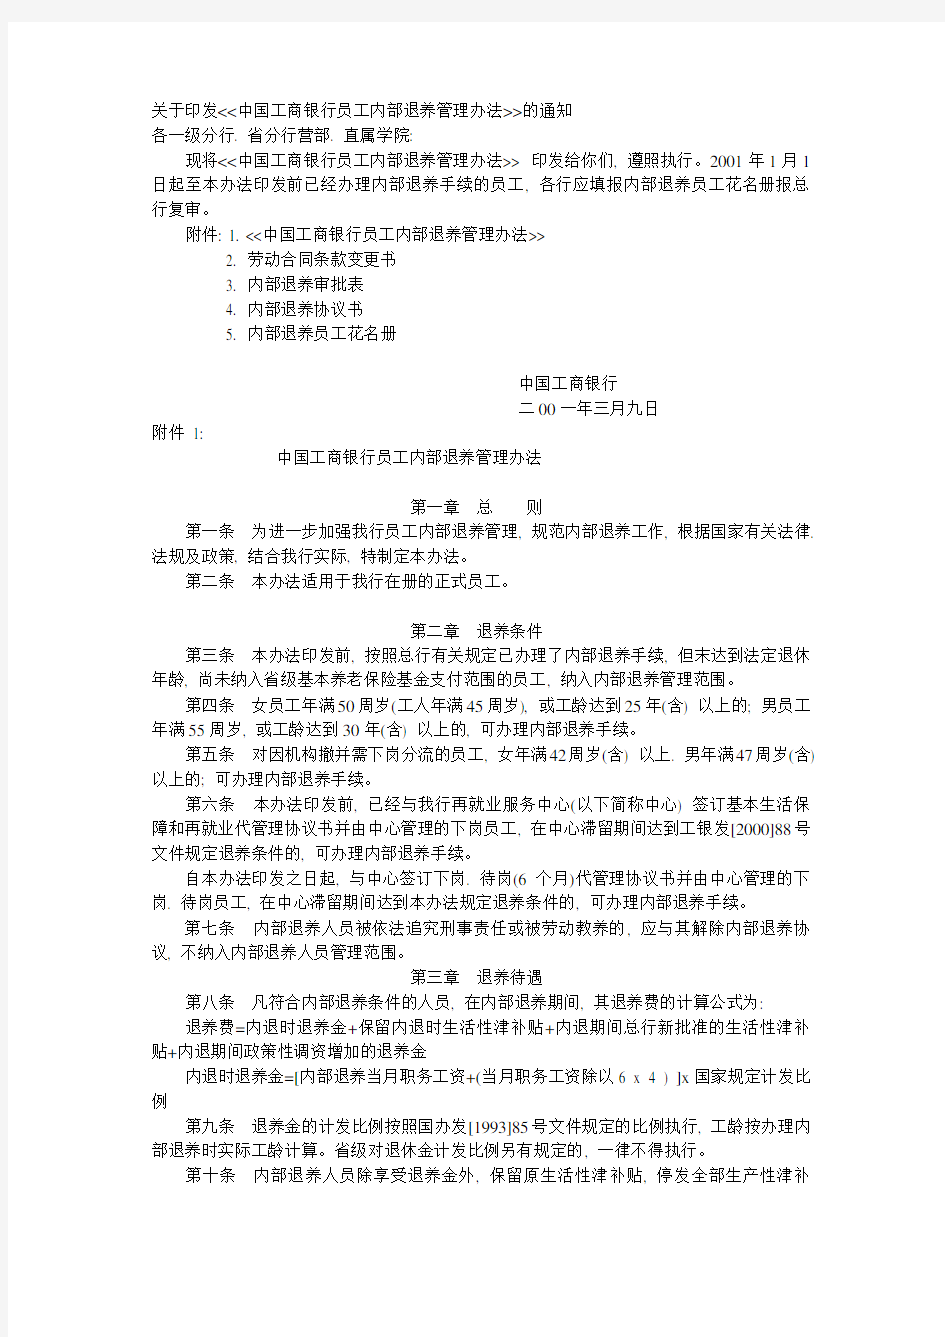 (完整版)中国工商银行员工内部退养管理办法